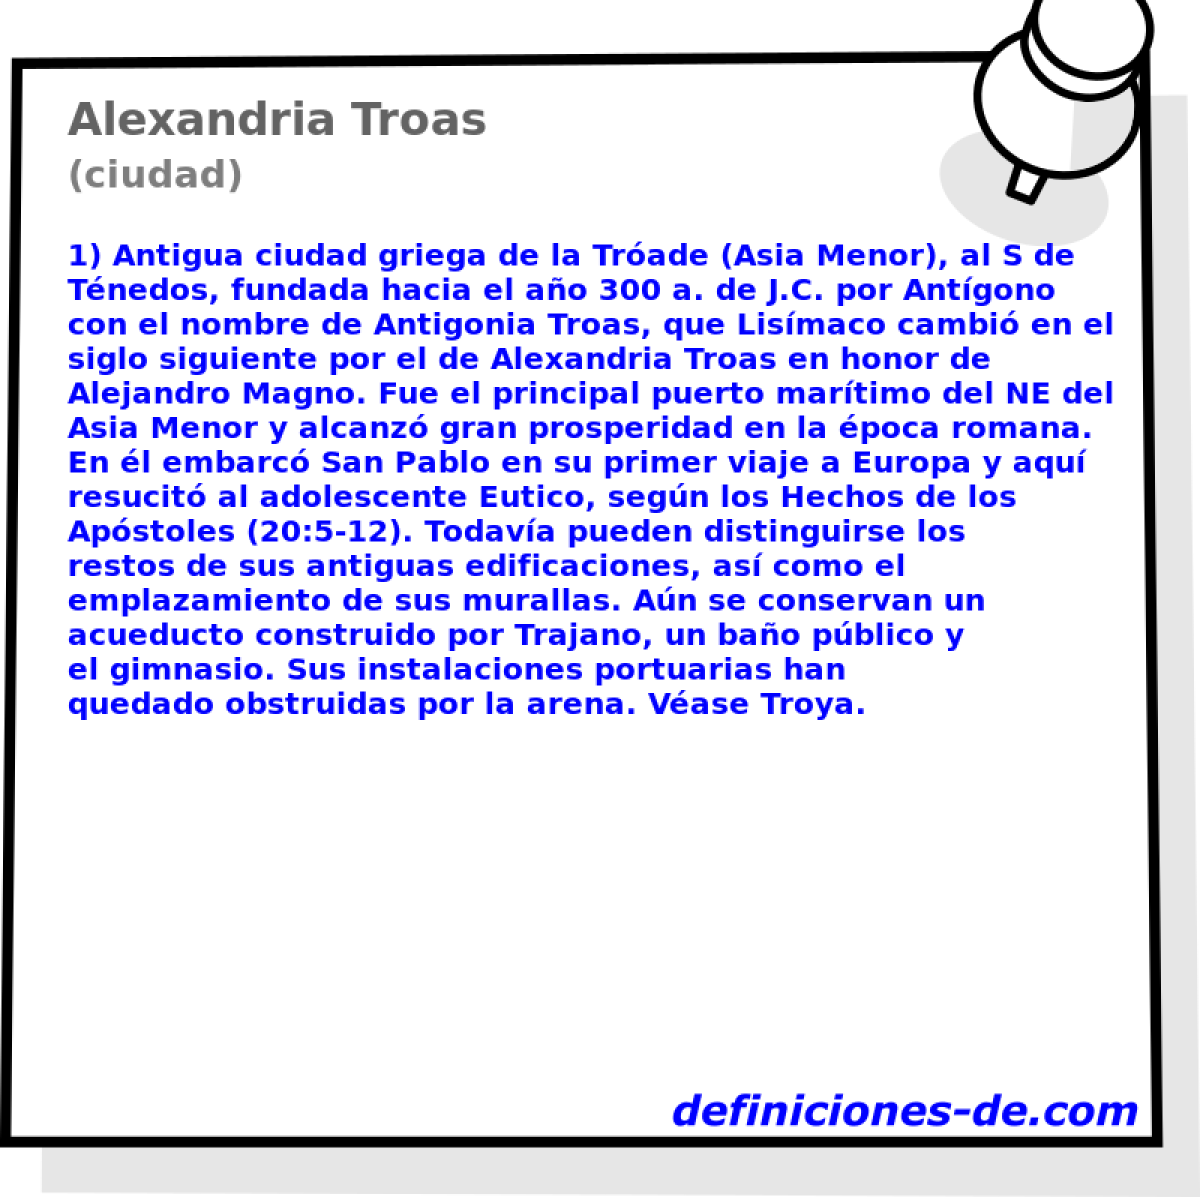 Alexandria Troas (ciudad)